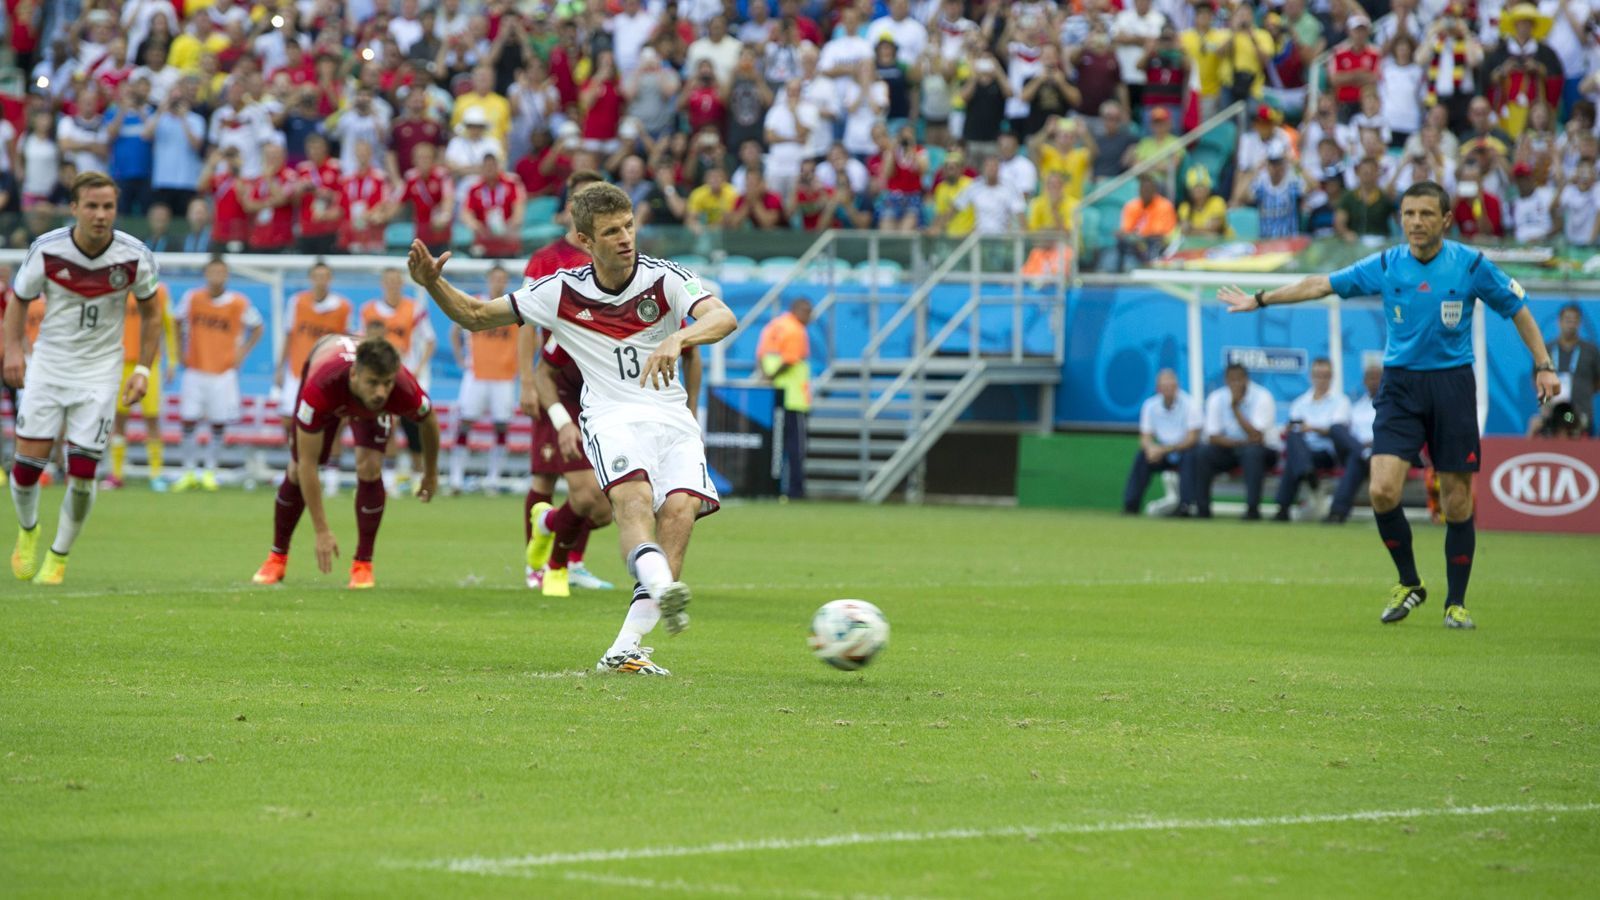 
                <strong>2014 in Brasilien (Weltmeister)</strong><br>
                Wie bei den drei Titeln zuvor gibt es zum Start ins Turnier einen Sieg. Matchwinner beim 4:0 gegen Portugal: Müller mit drei Treffern.
              